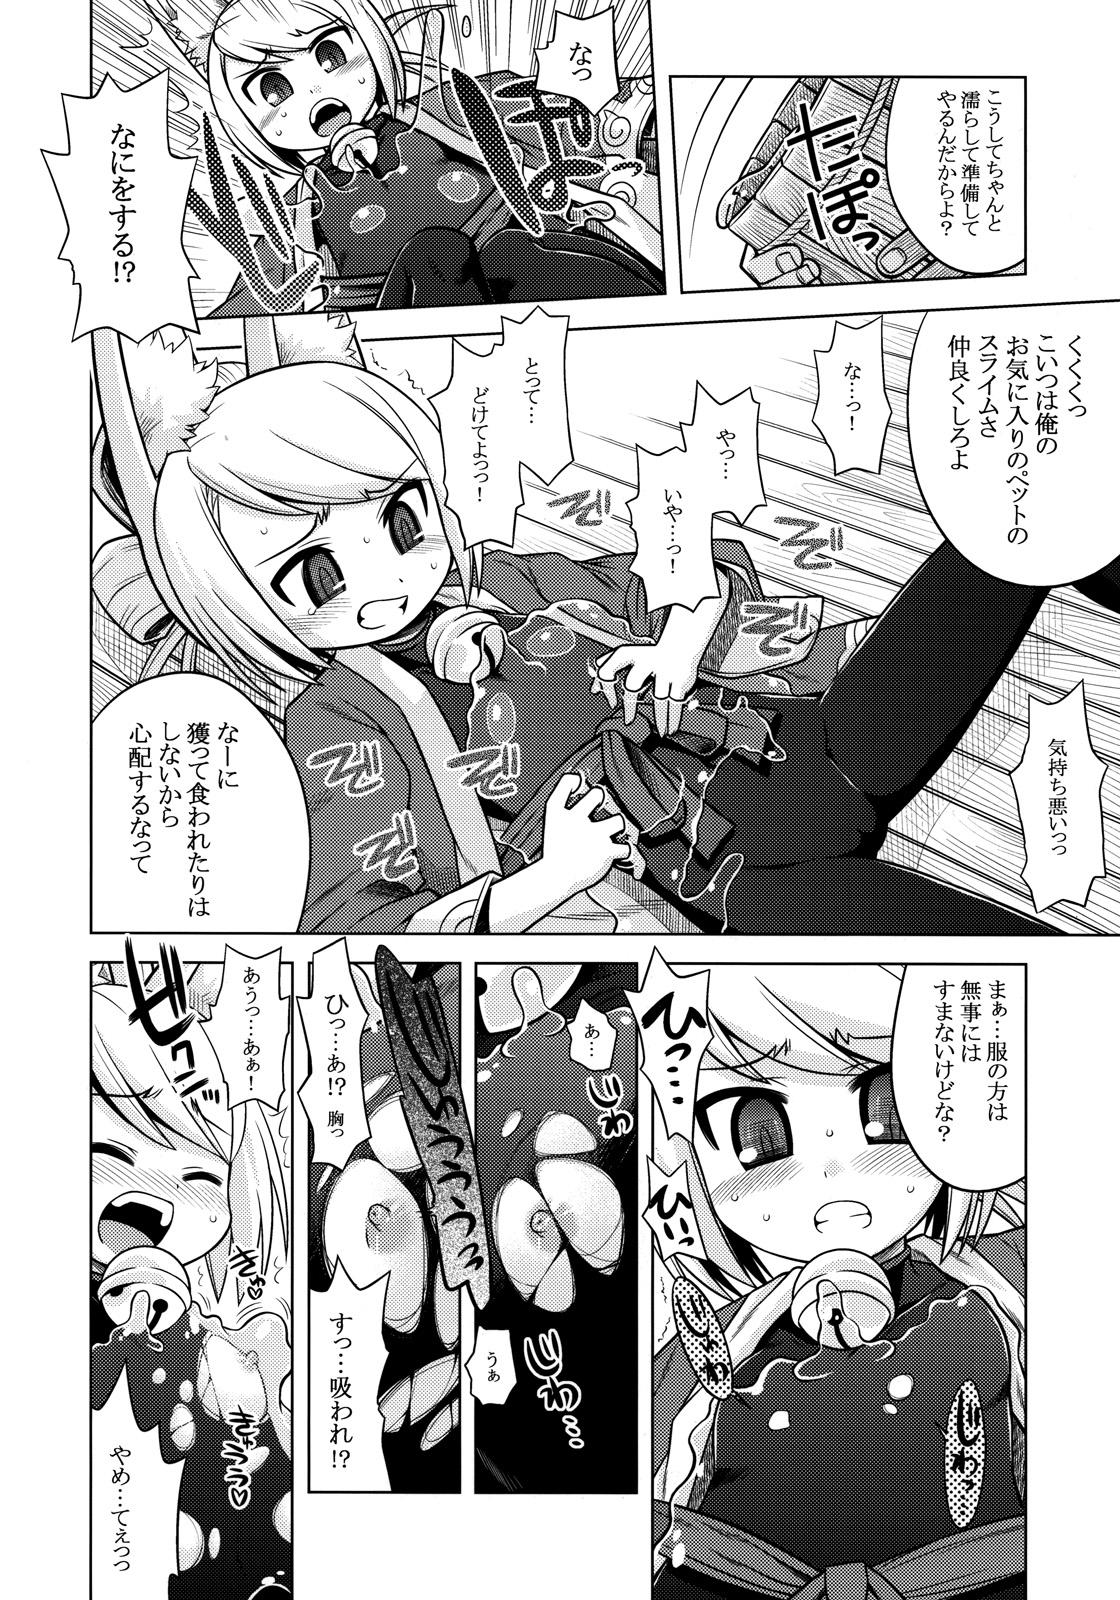 Fit Nanadora no Anone 2 - 7th dragon Guyonshemale - Page 6